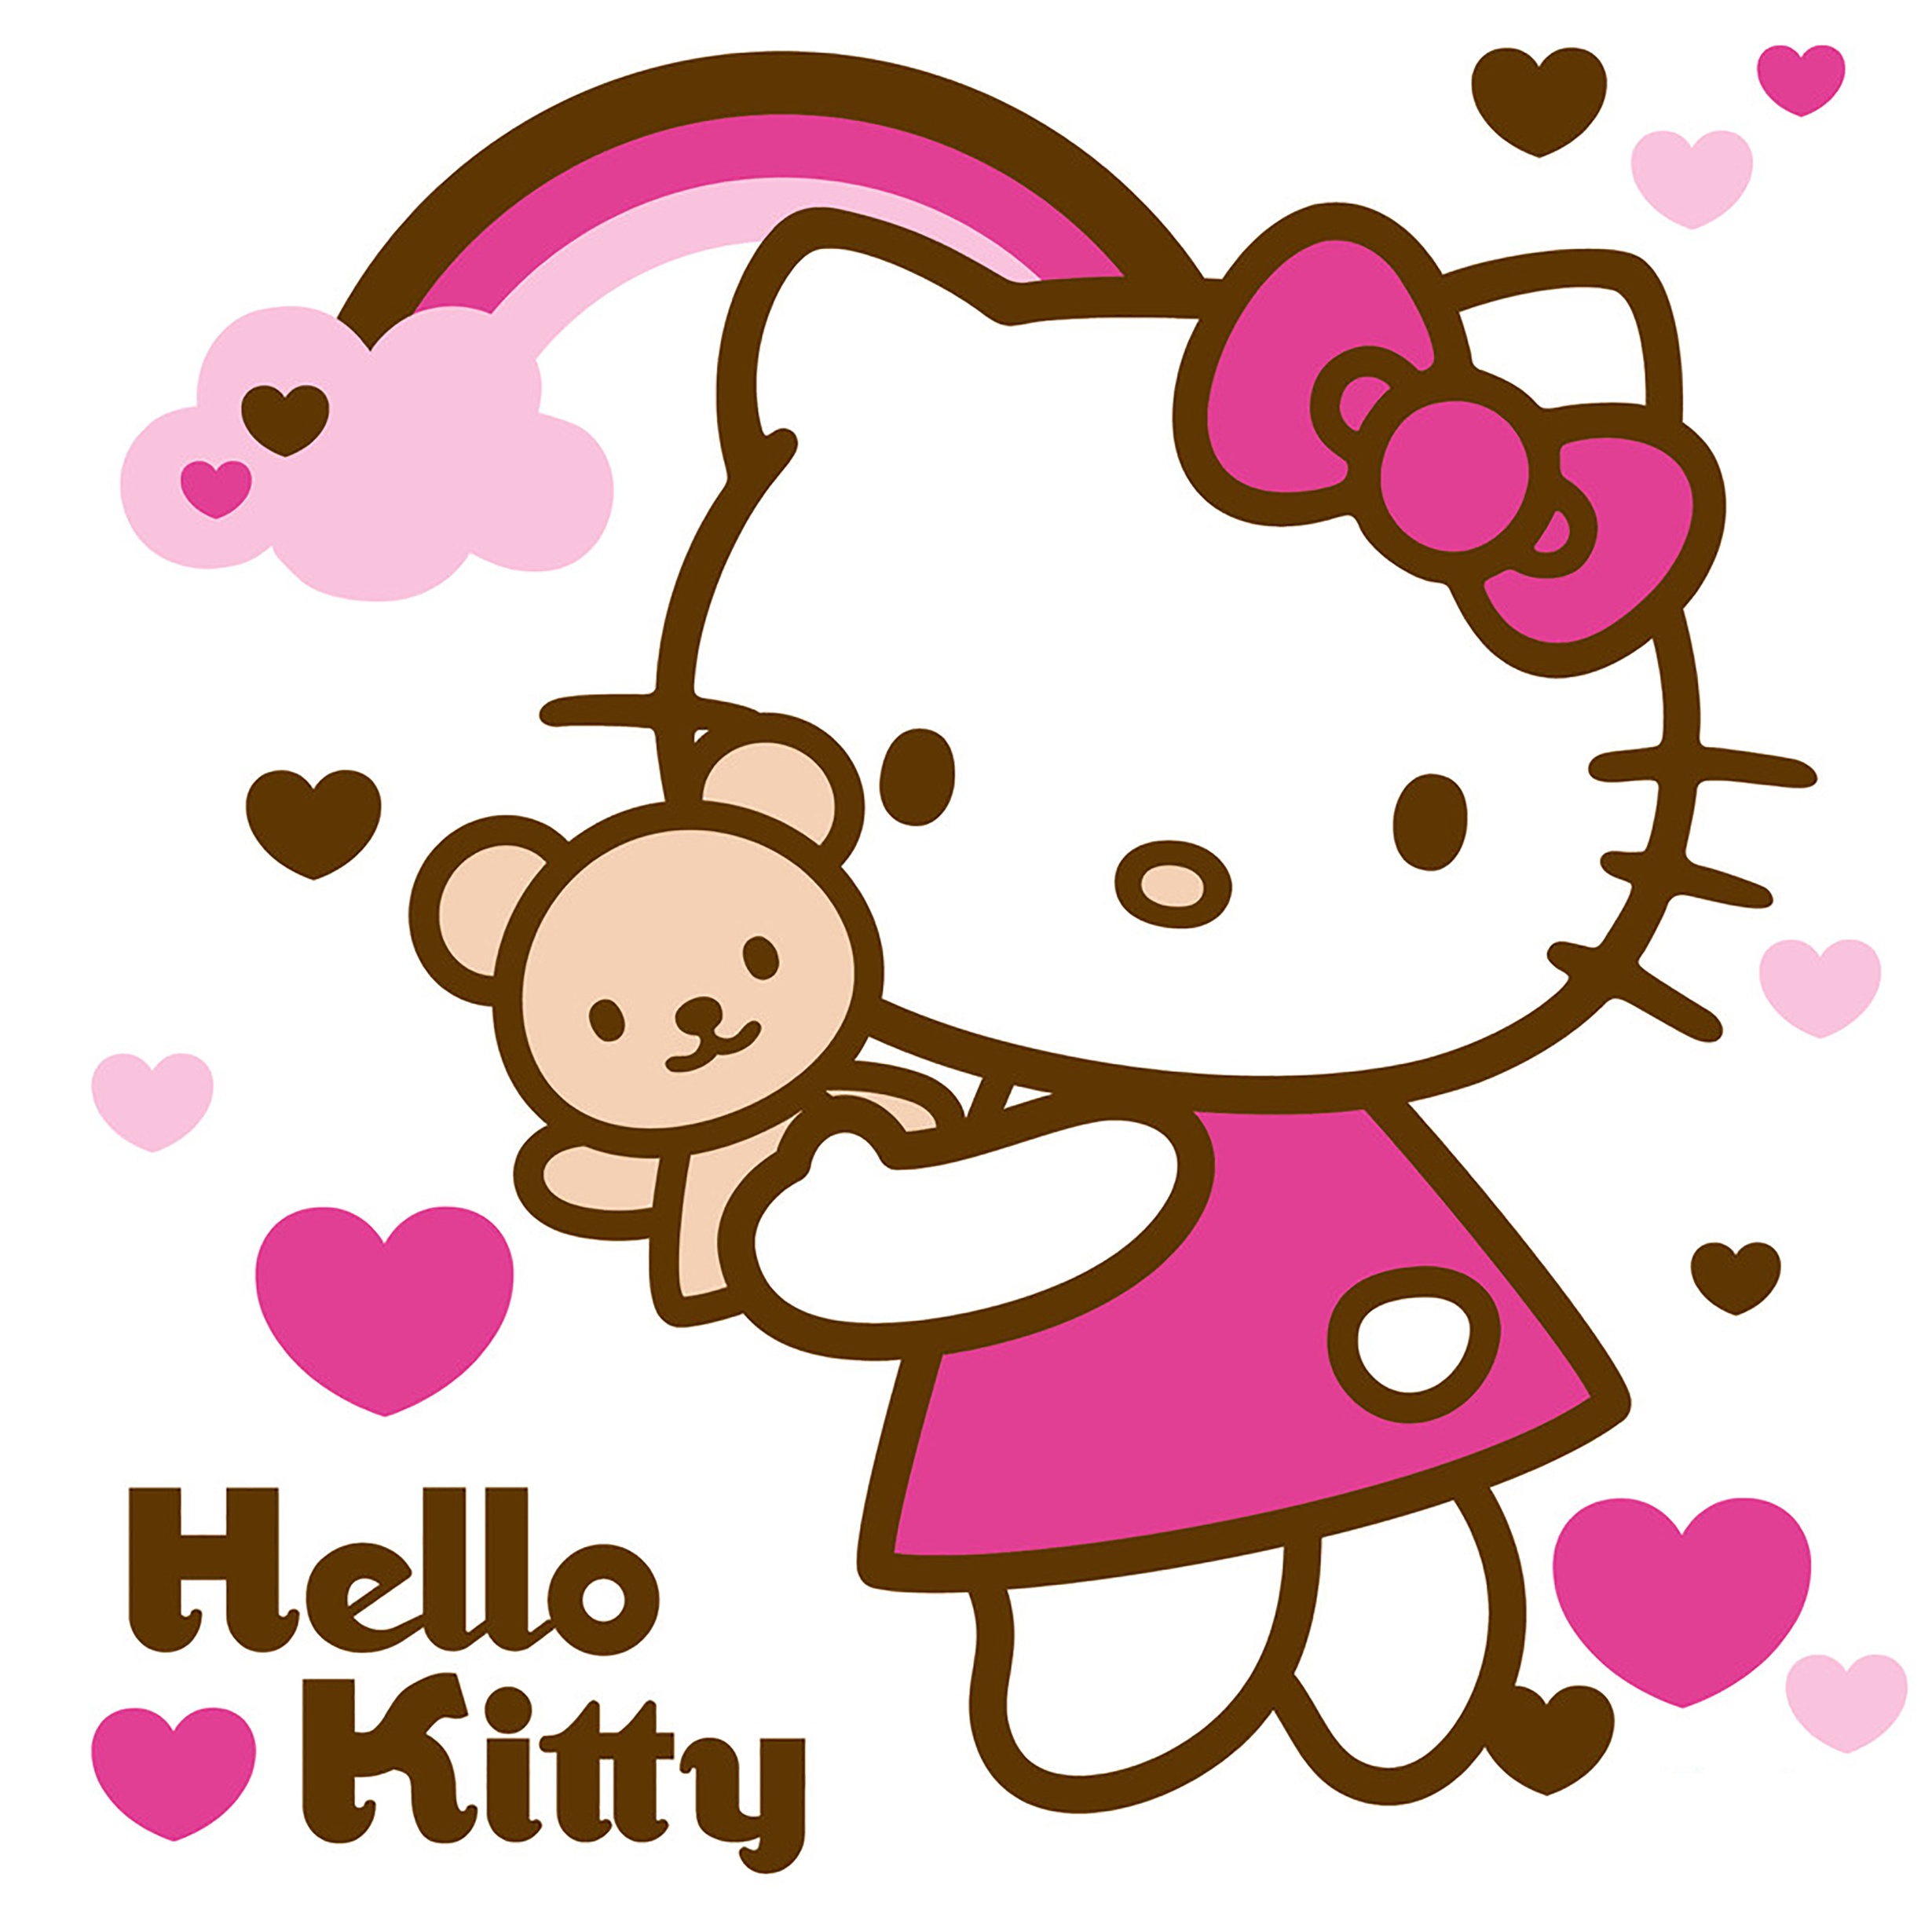 Ngắm Bộ Hình Ảnh Hello Kitty Siêu Dễ Thương Cho Bạn Gái  Giadinh360vn